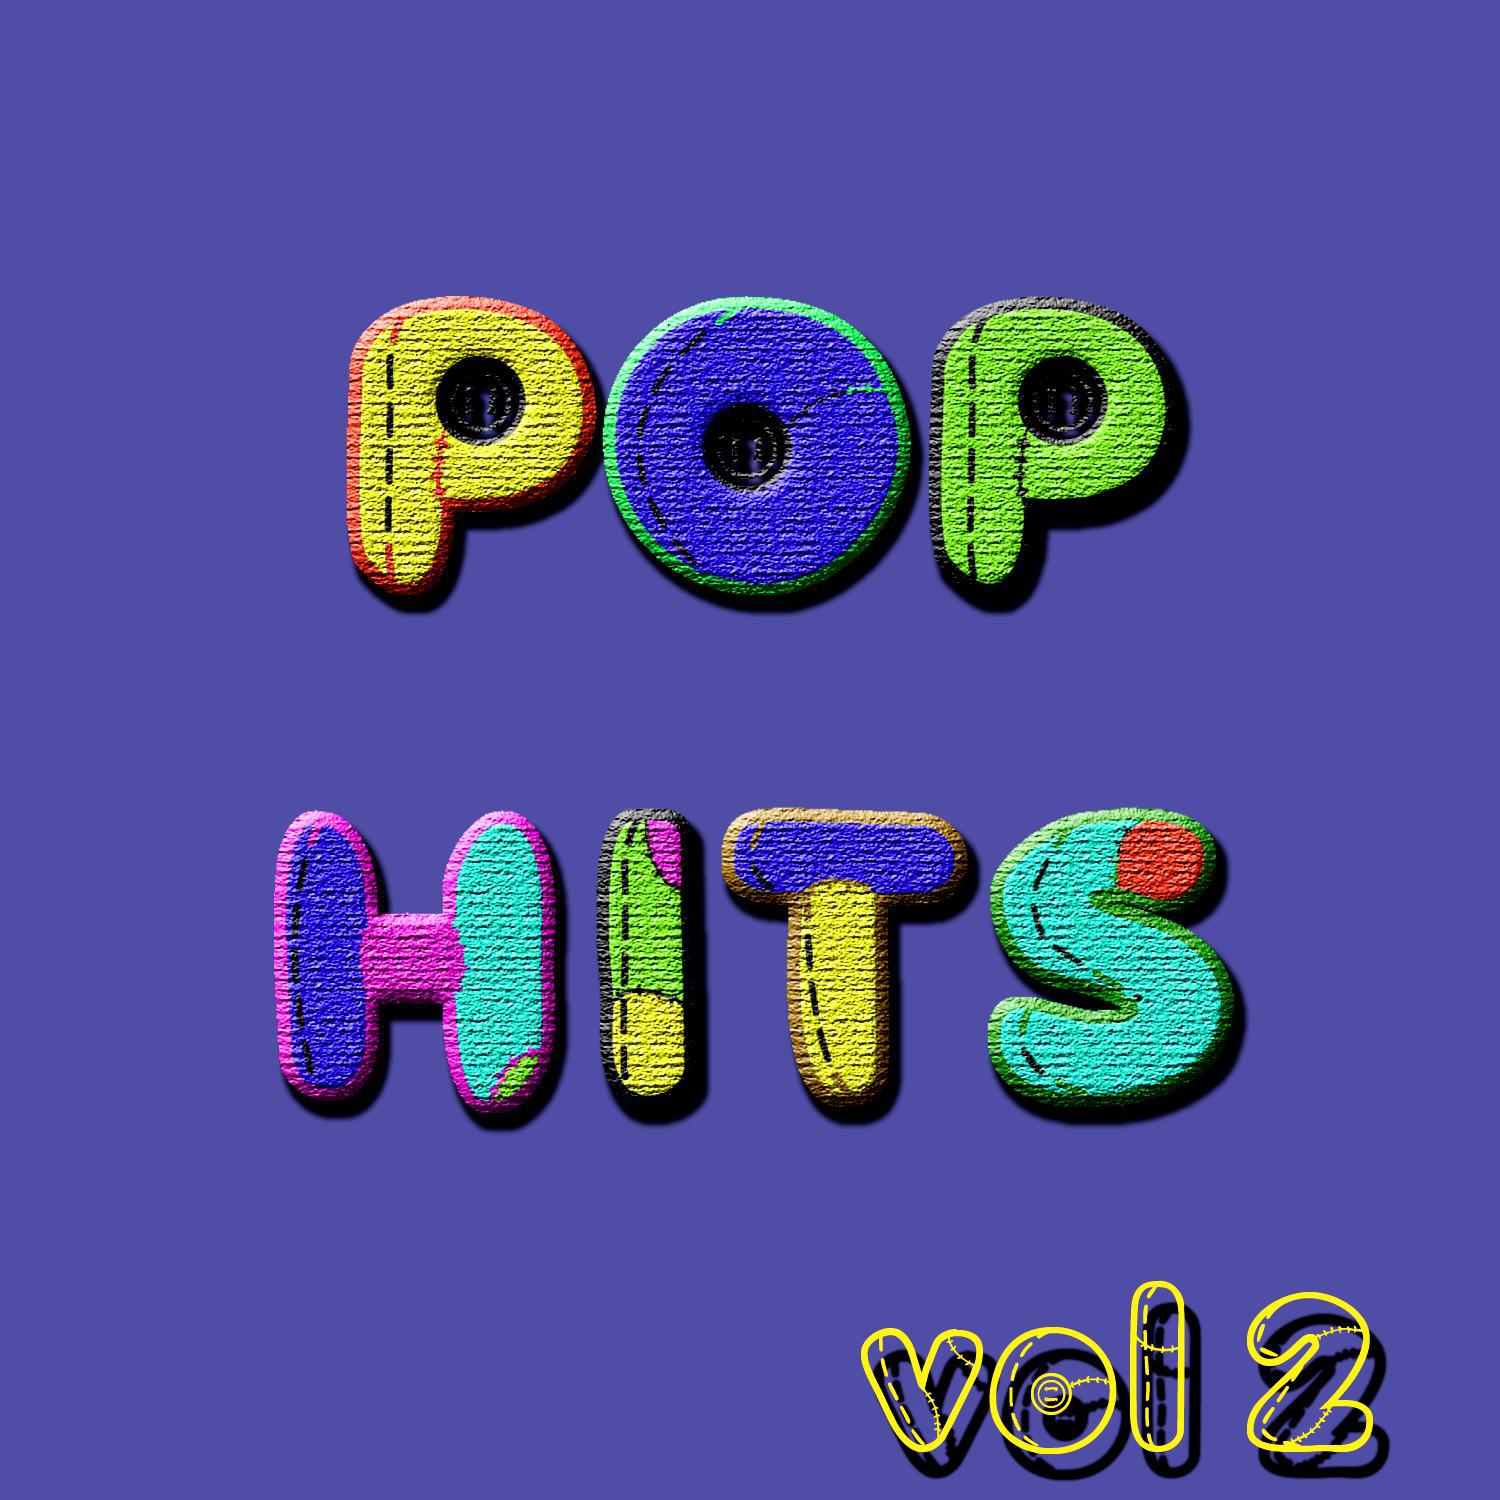 Pop Hits Vol 2